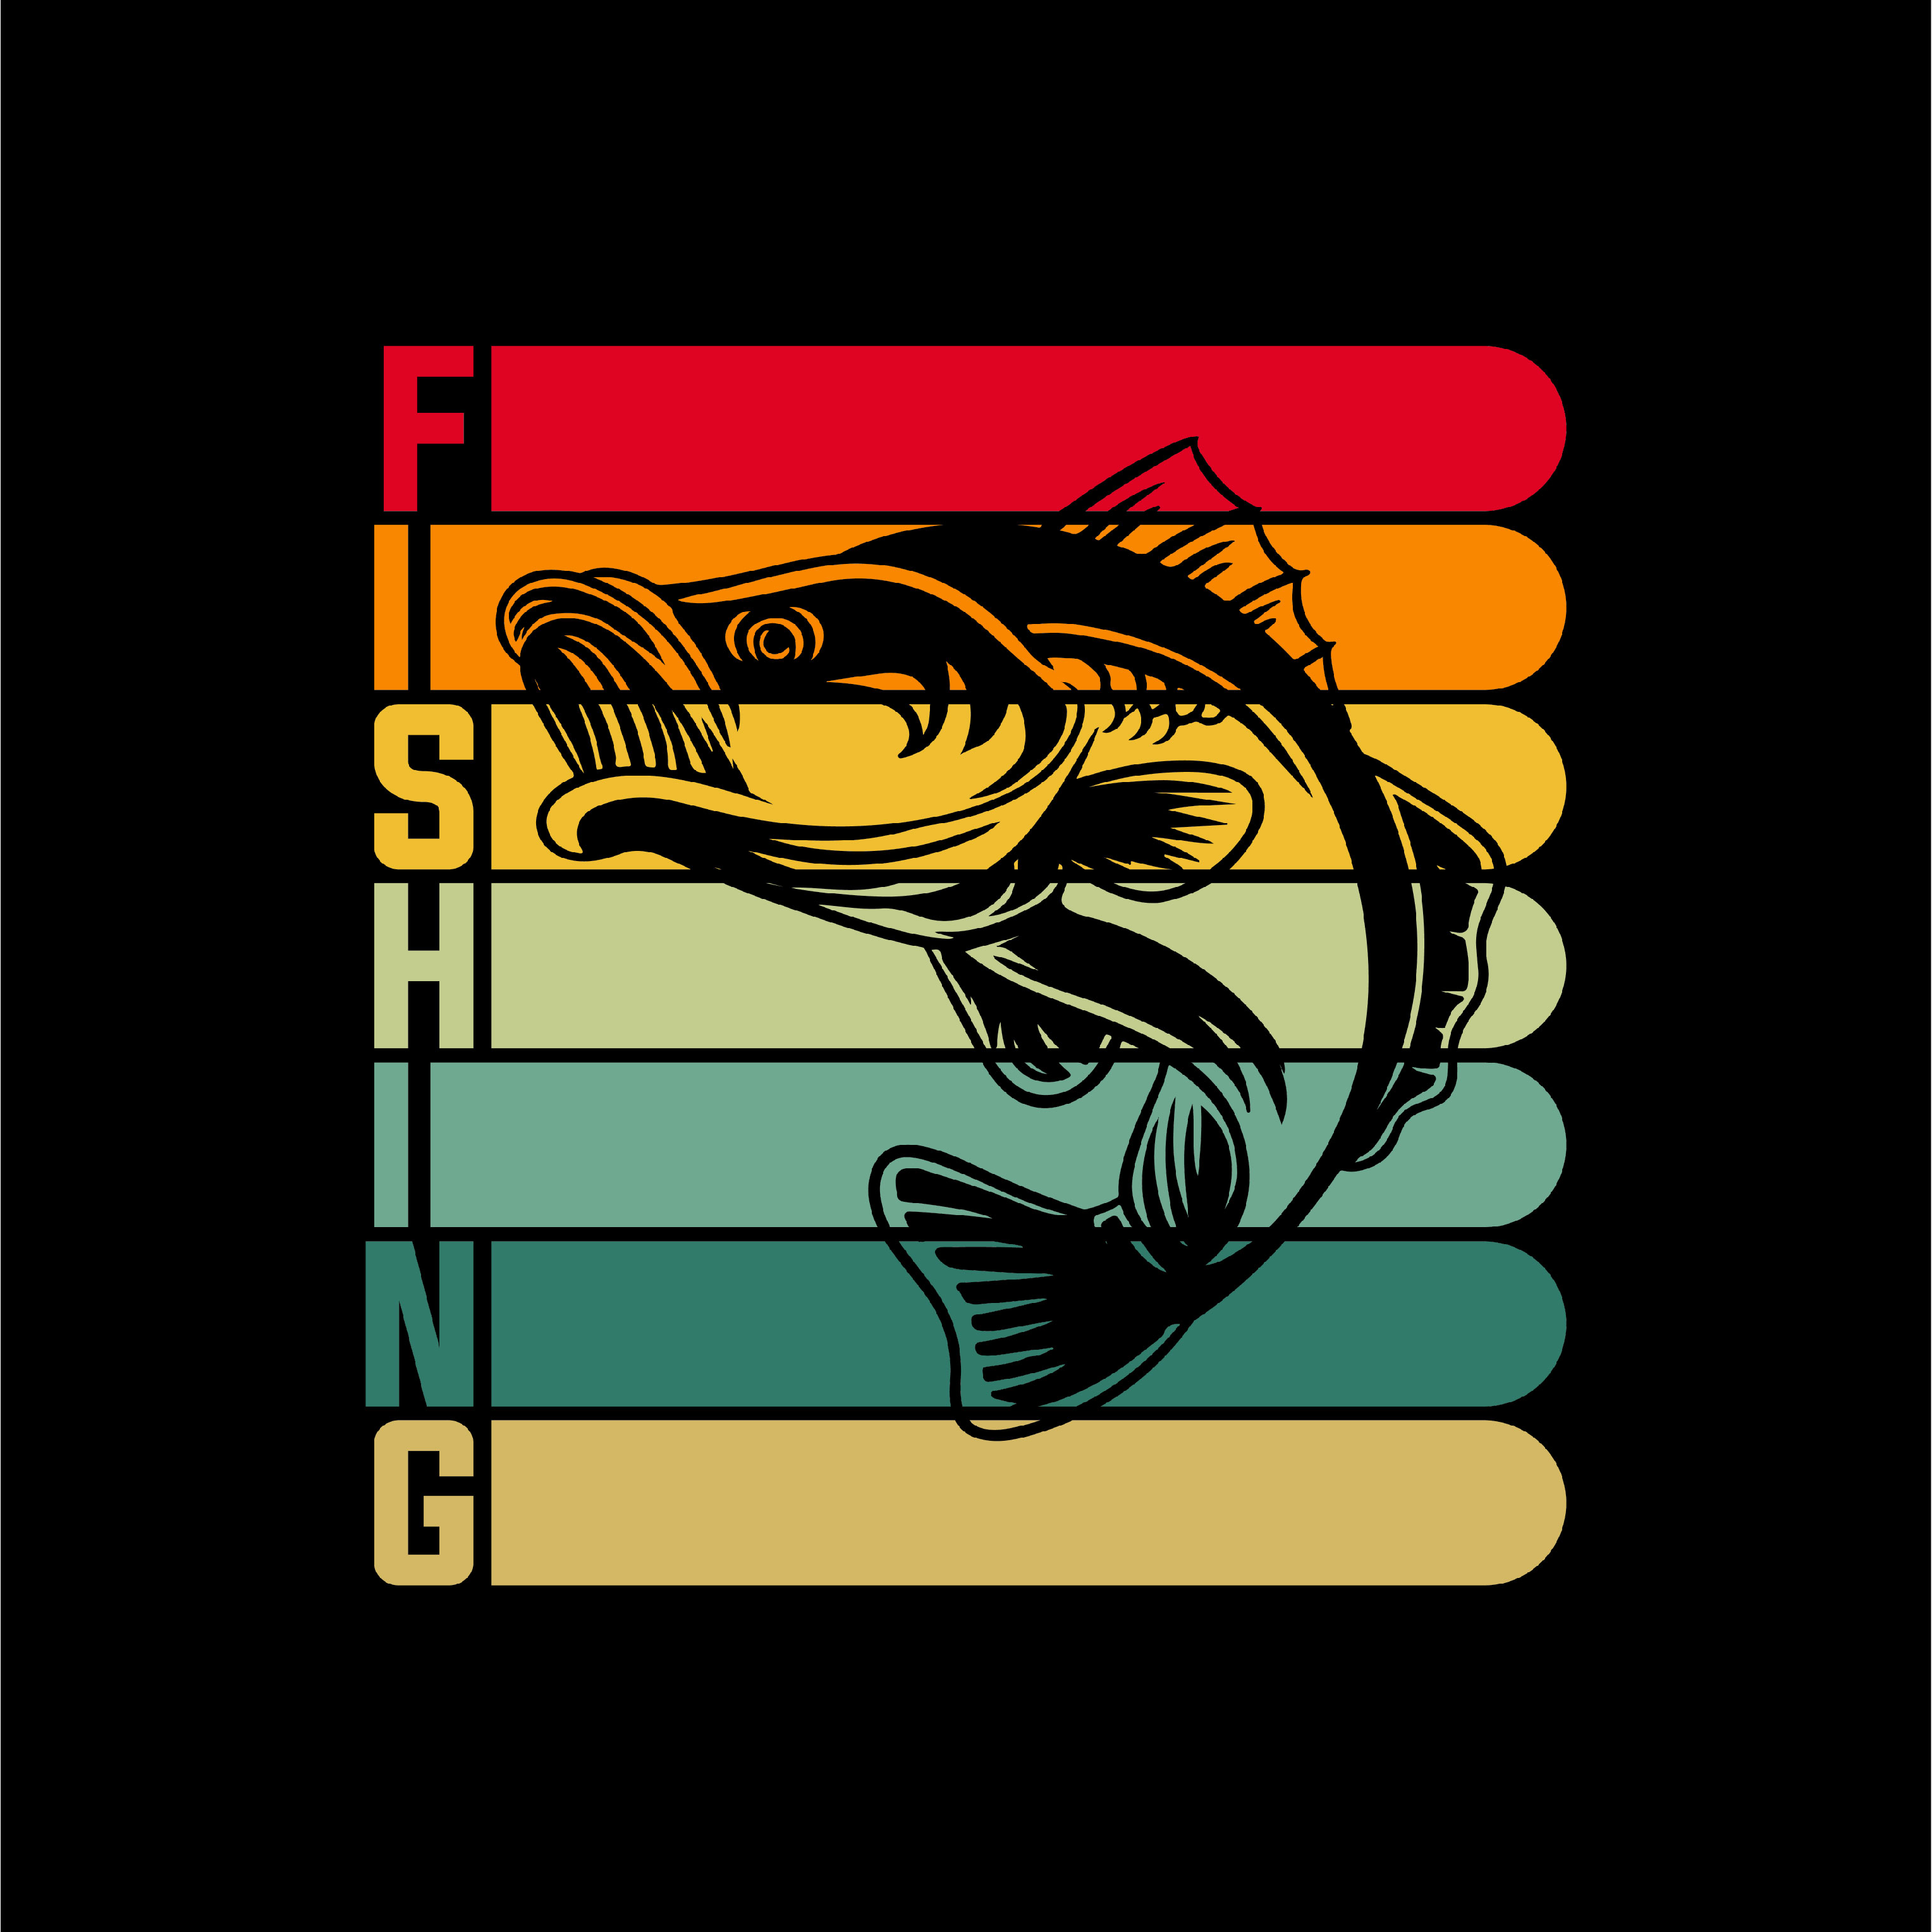 Premium Vector  Awesome fishing tshirt design or fisherman tshirt label  vintage retro style